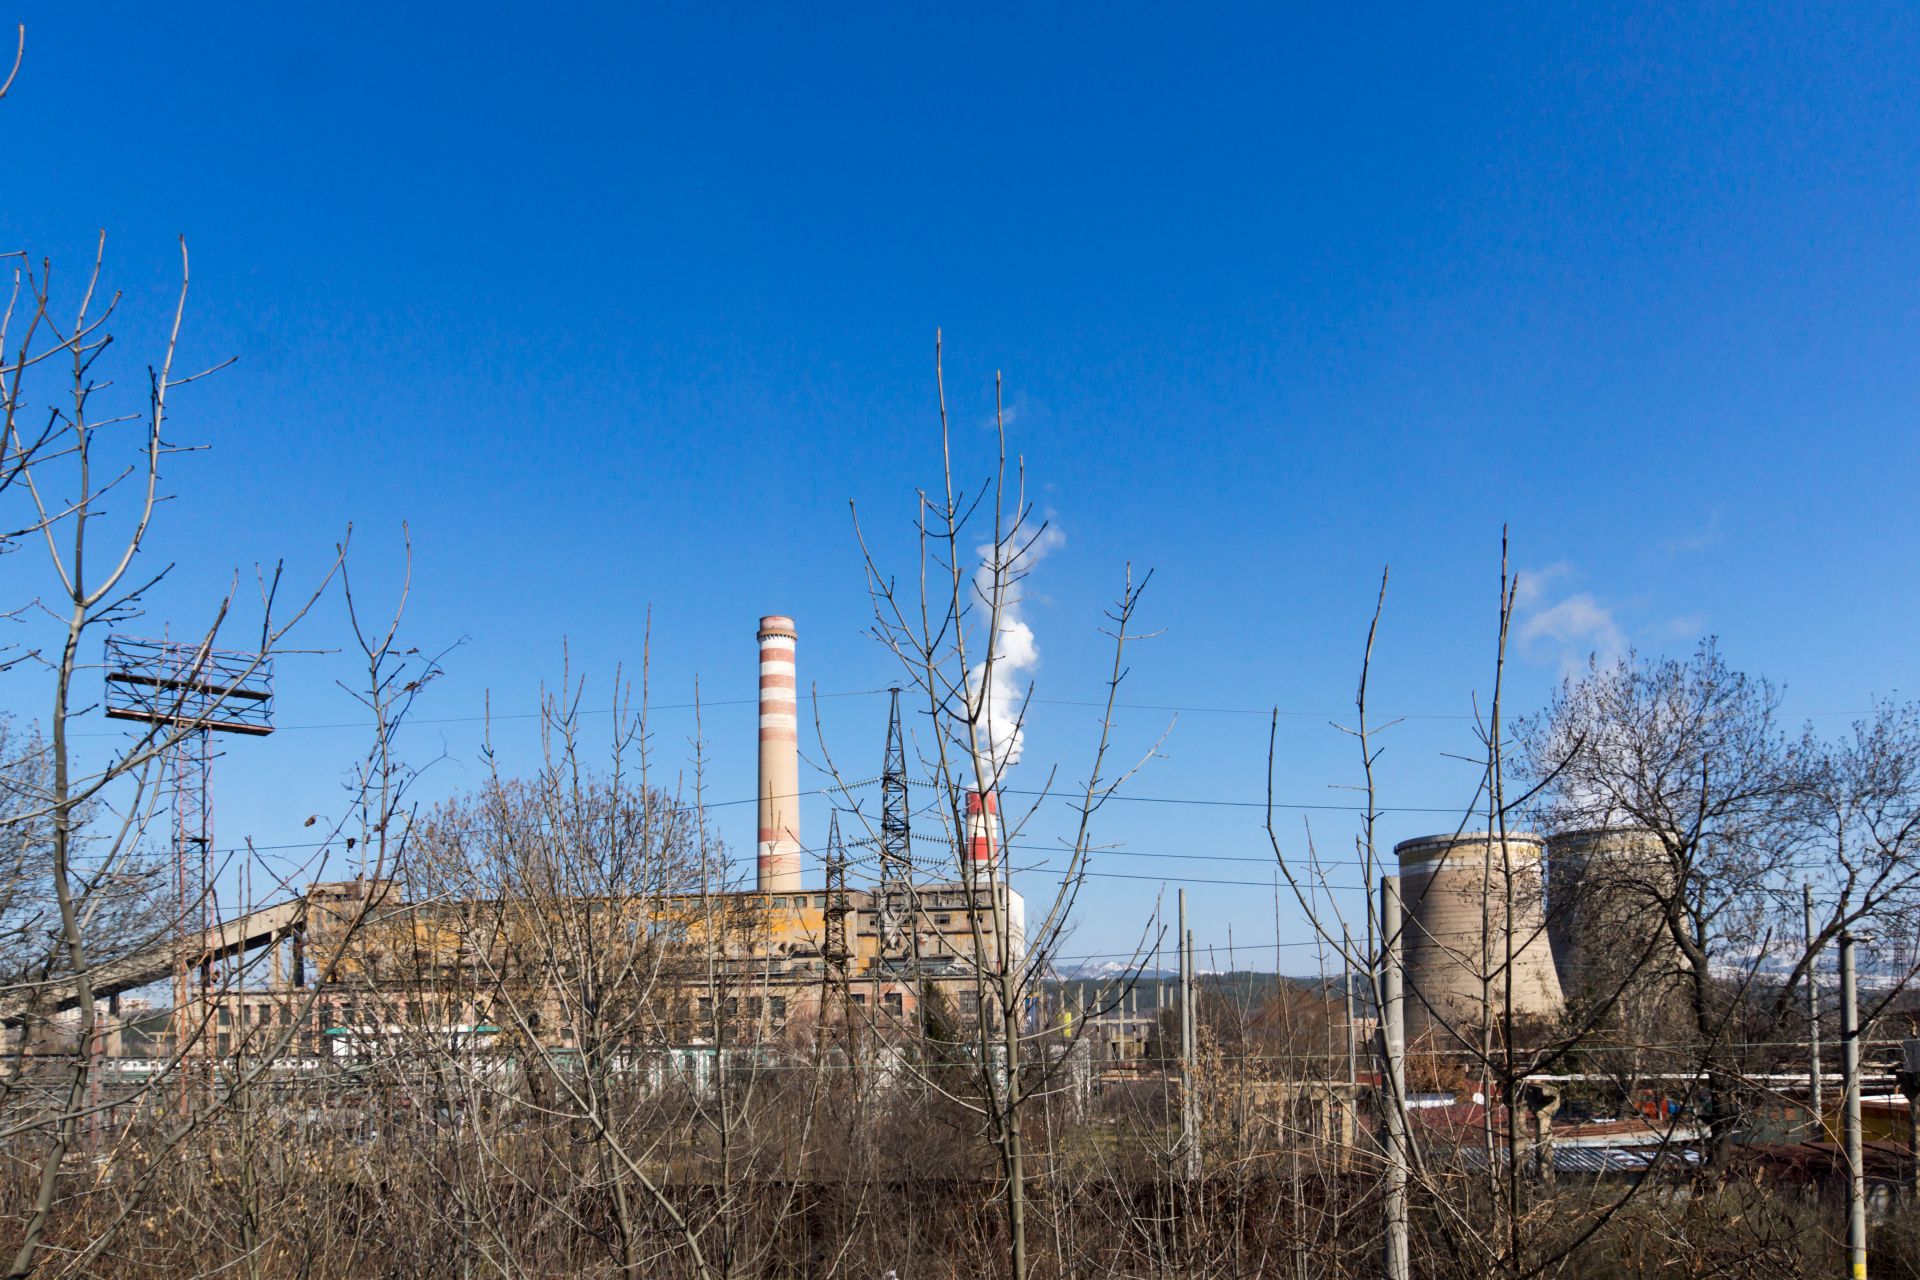 "Български енергиен холдинг" ЕАД е сред най-големите замърсители на въздуха в Европа, показва проучване